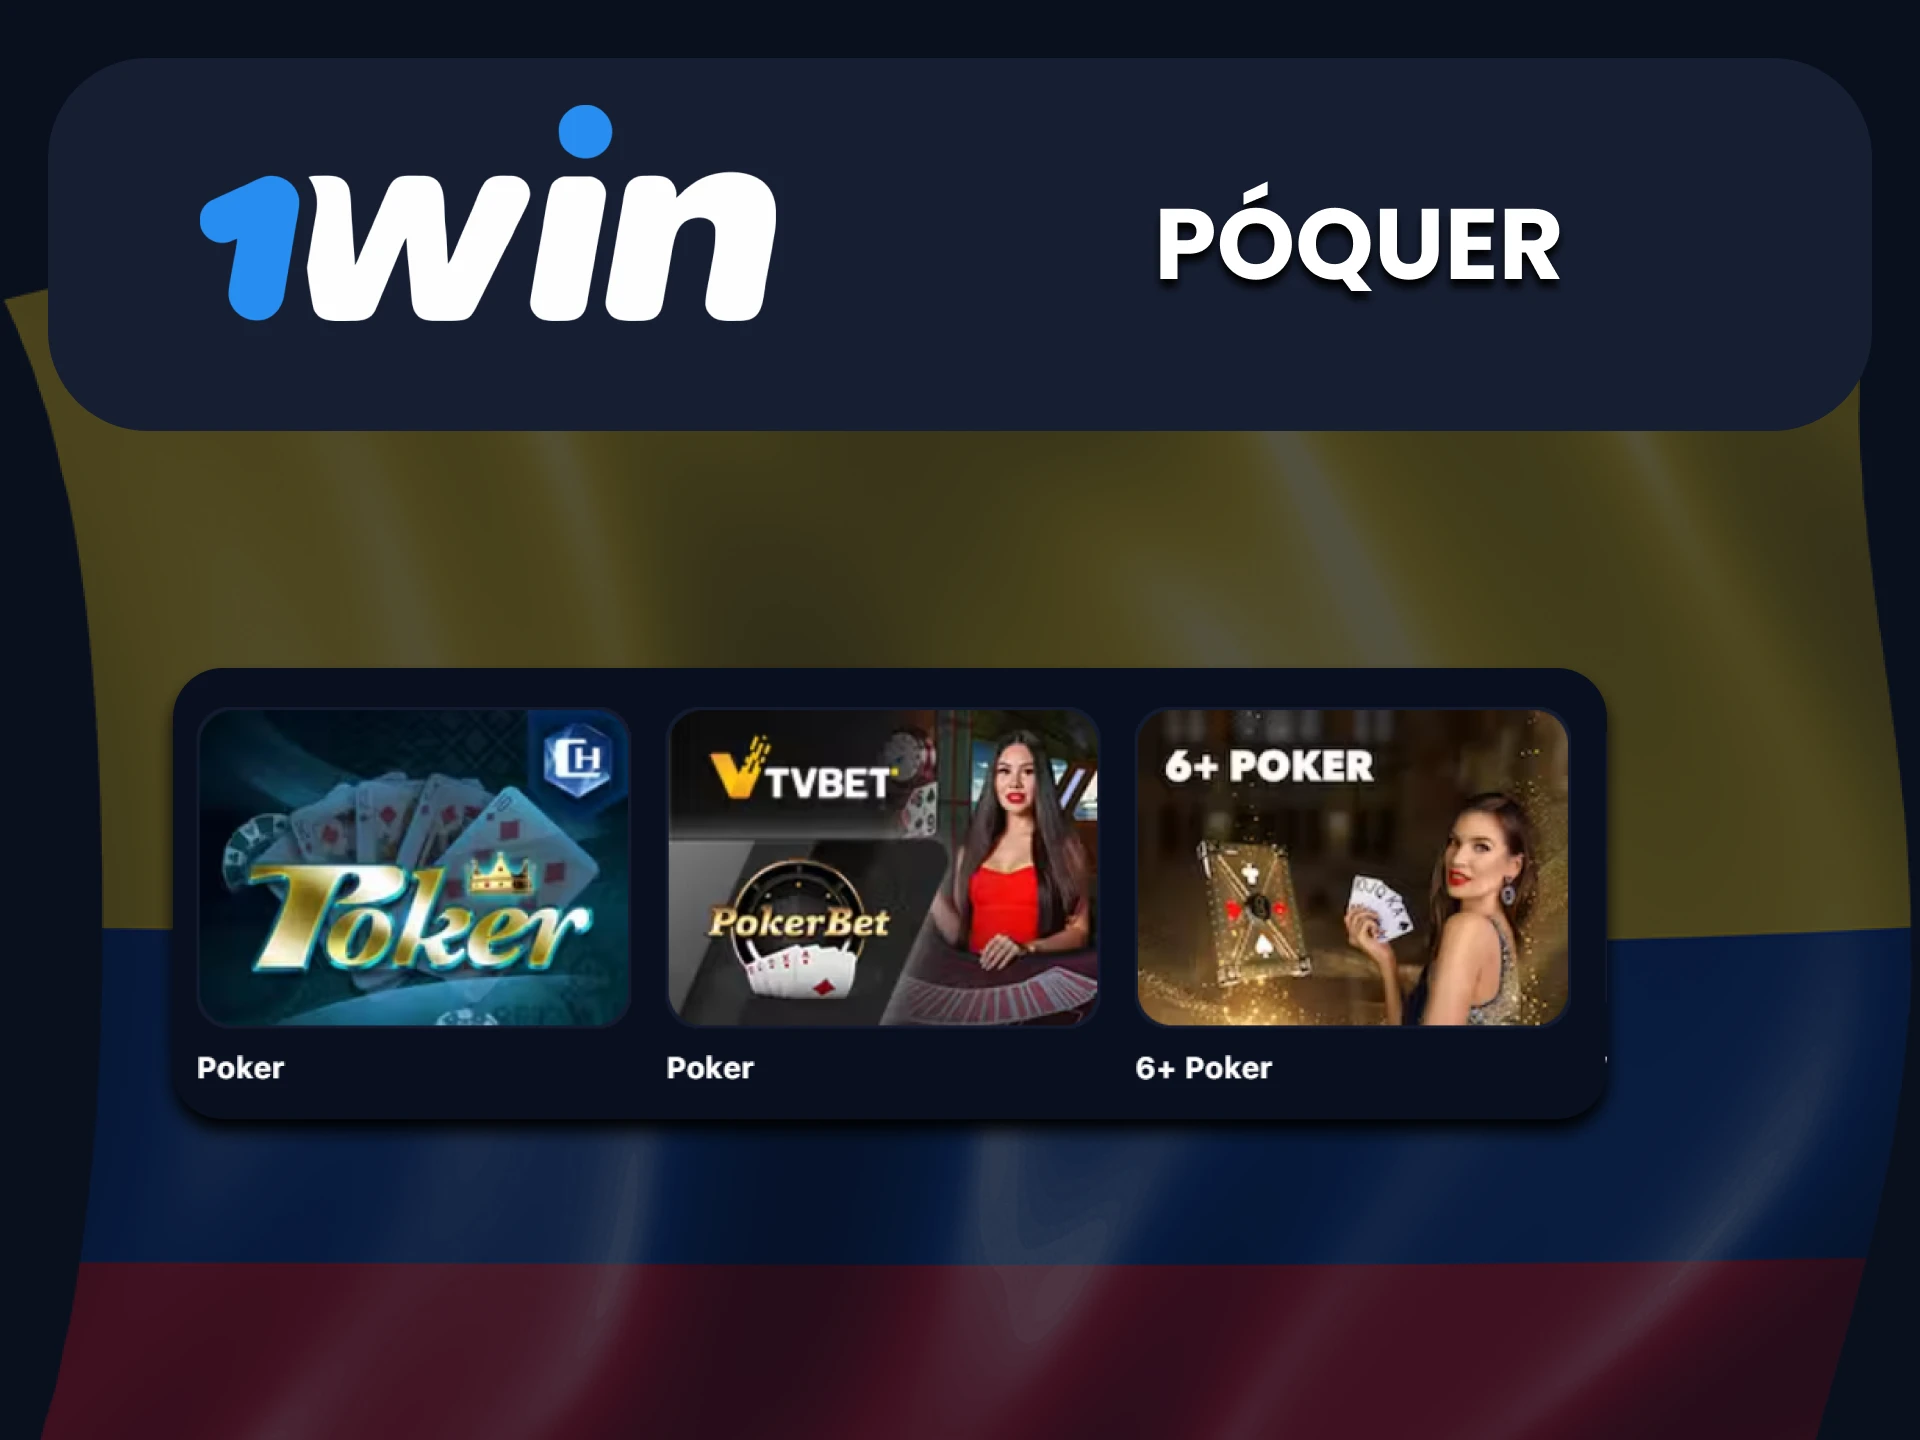 Para juegos en la sección de casino en vivo de 1win, elija Poquer.